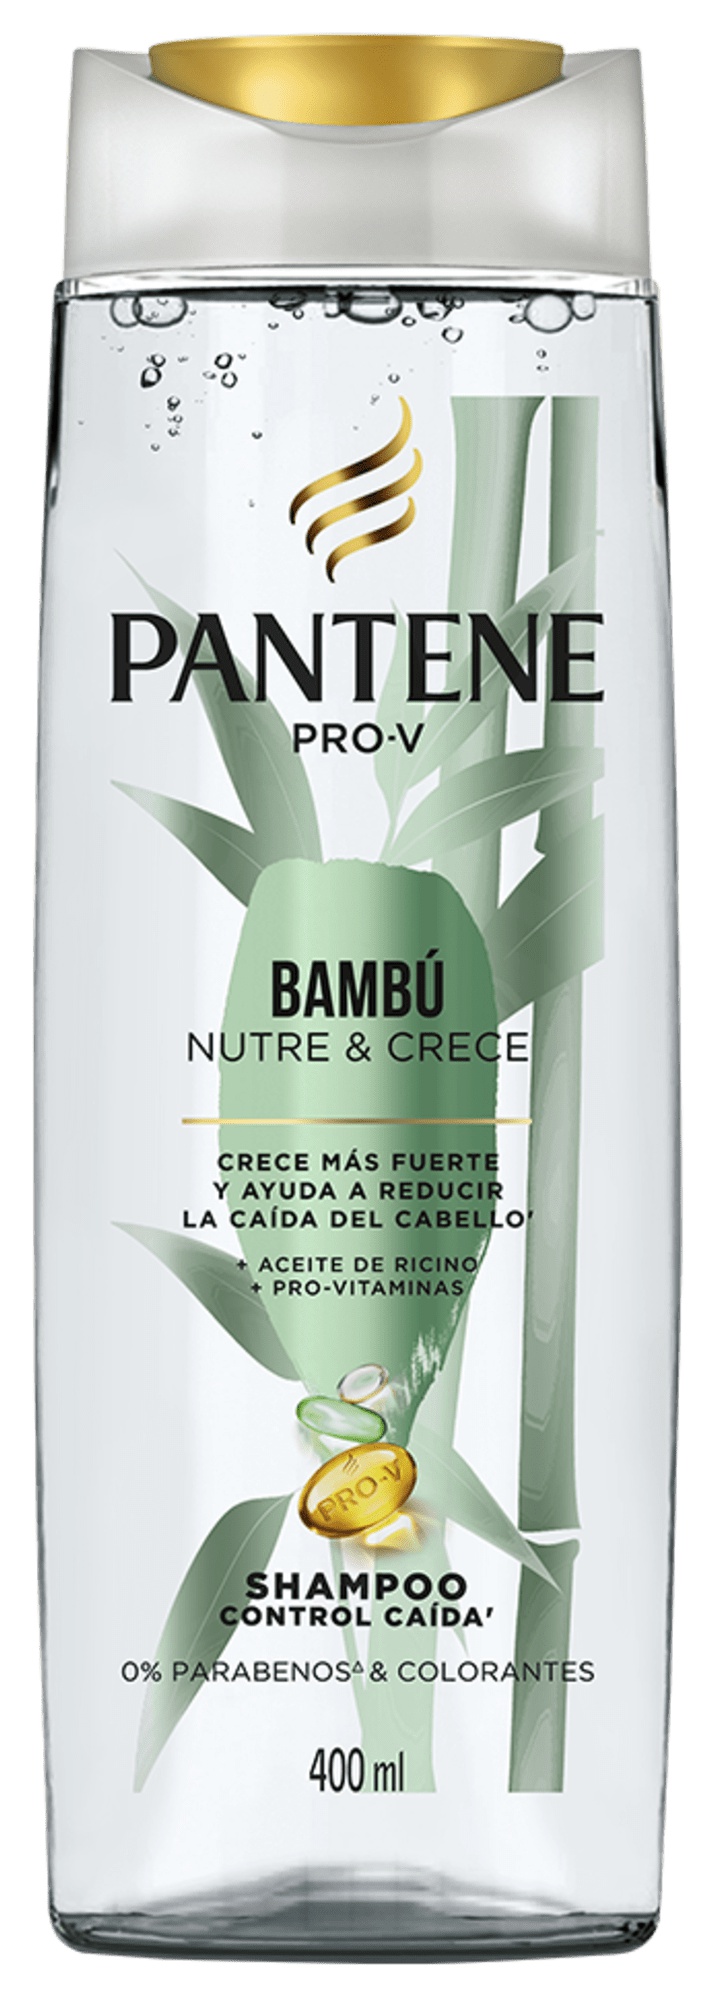 Pantene Shampoo Control Caída Bambú Nutre & Crece